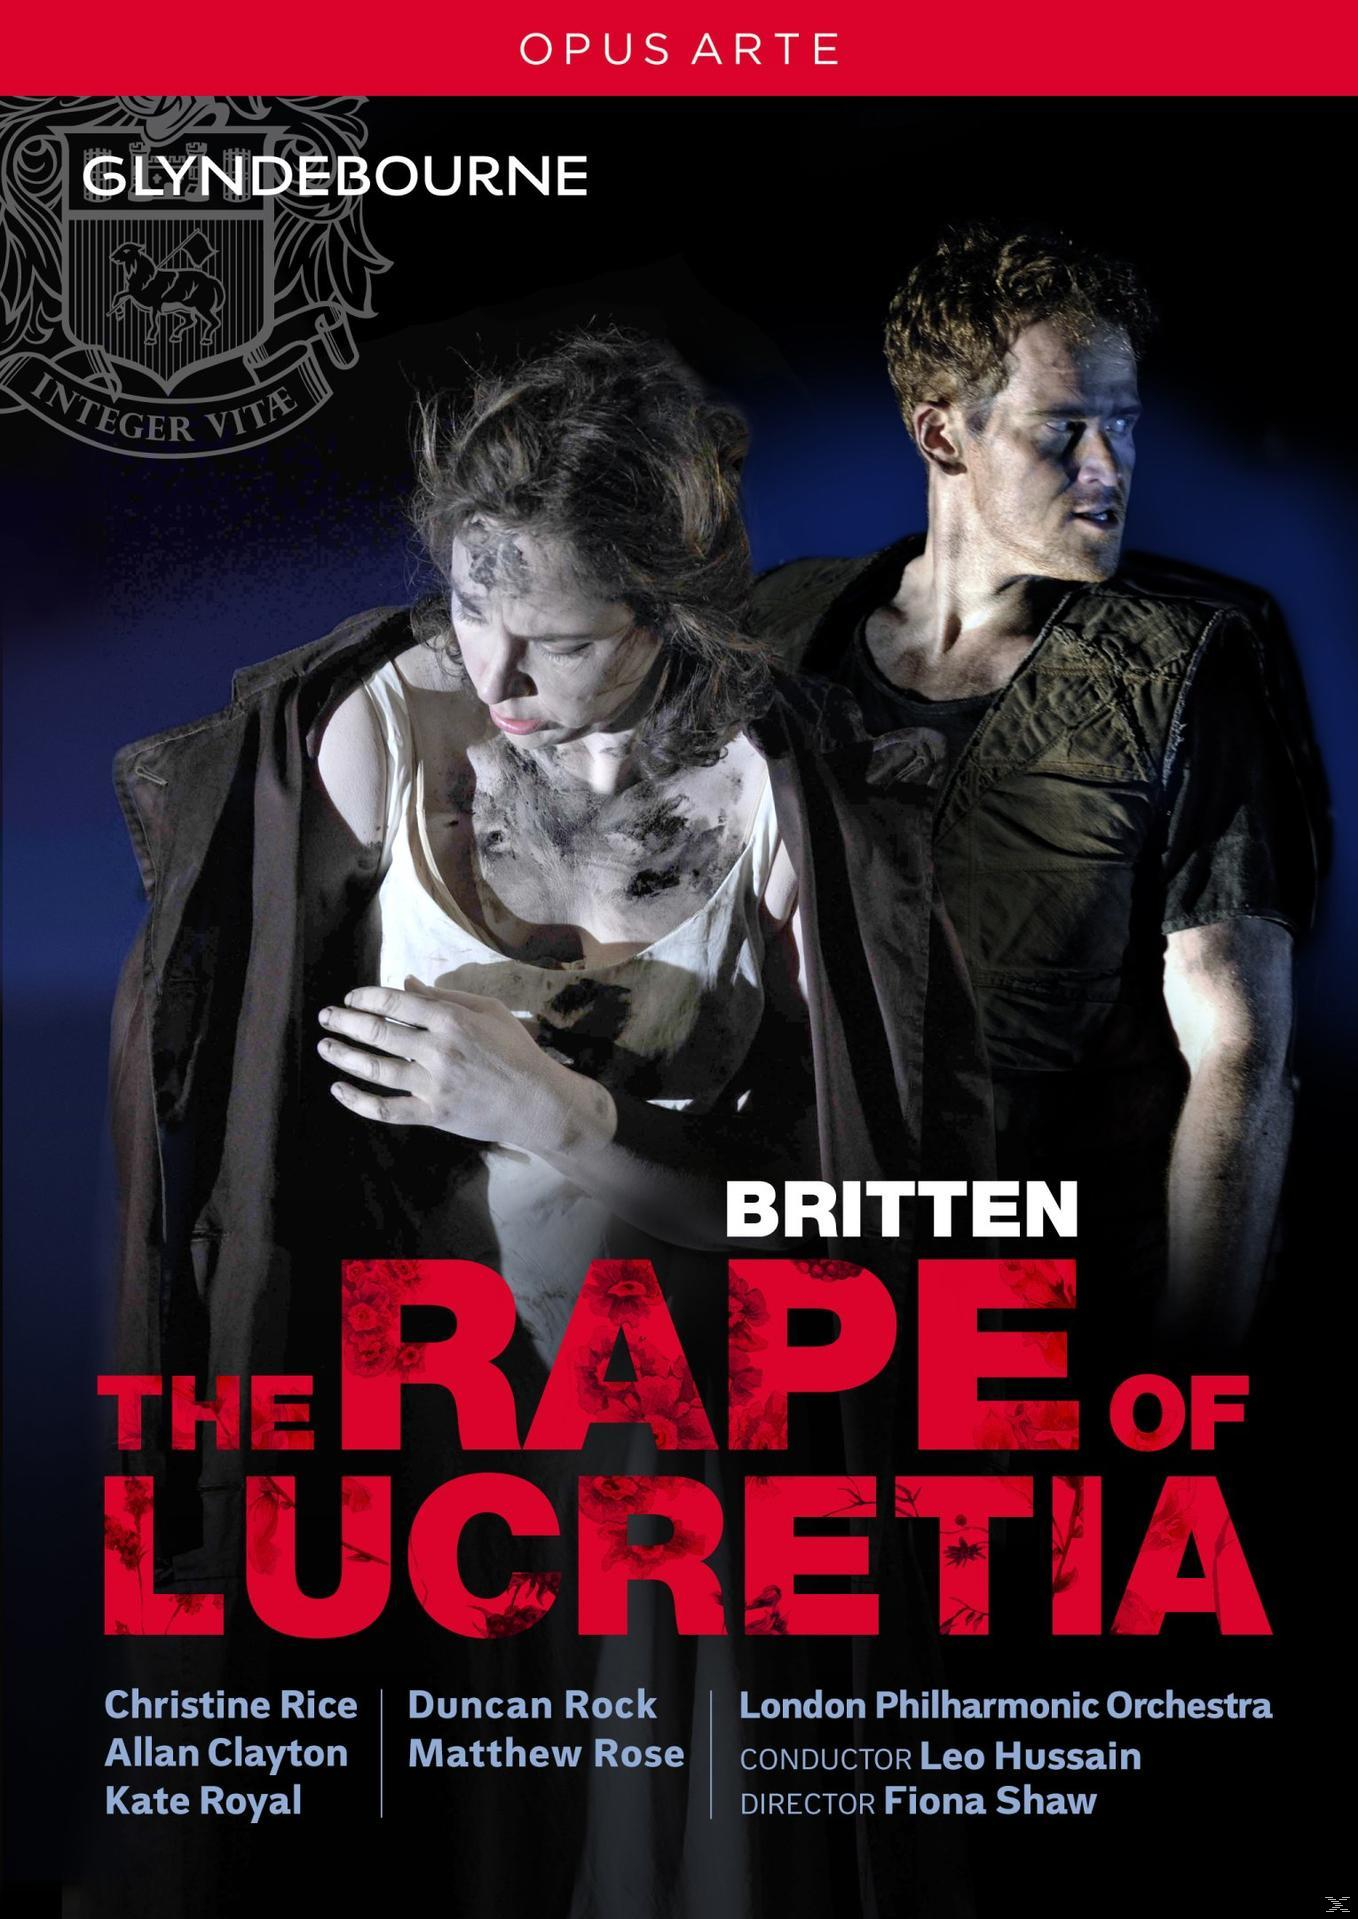 - Rape (DVD) The of Lucretia